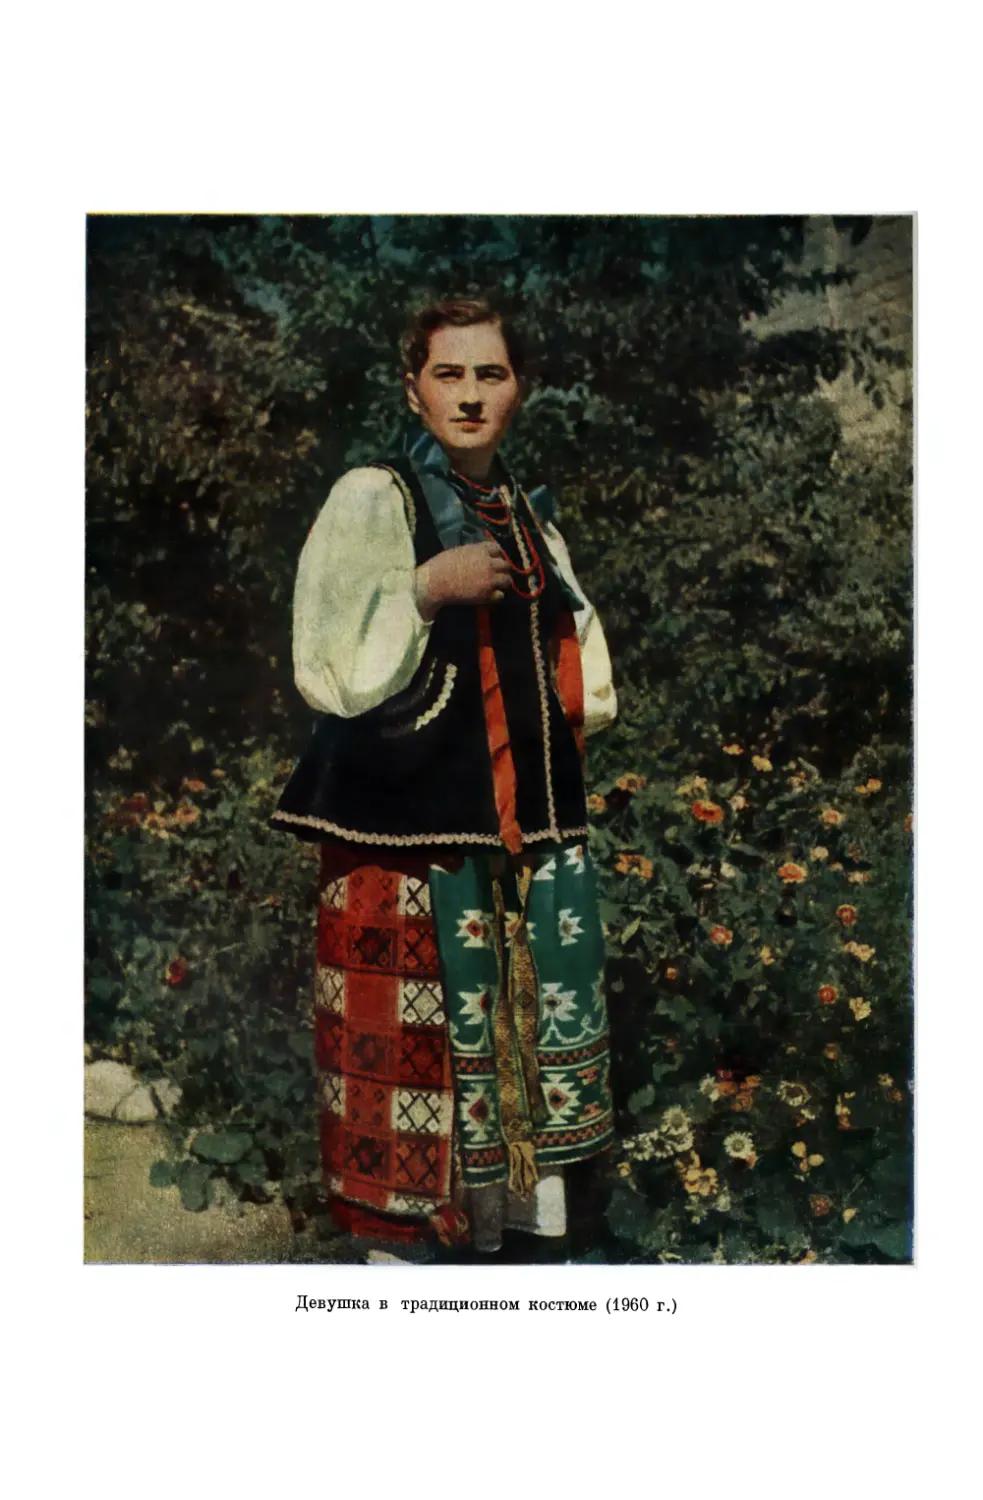 Вклейка. Девушка в традиционном костюме, XX в. Полтавщина